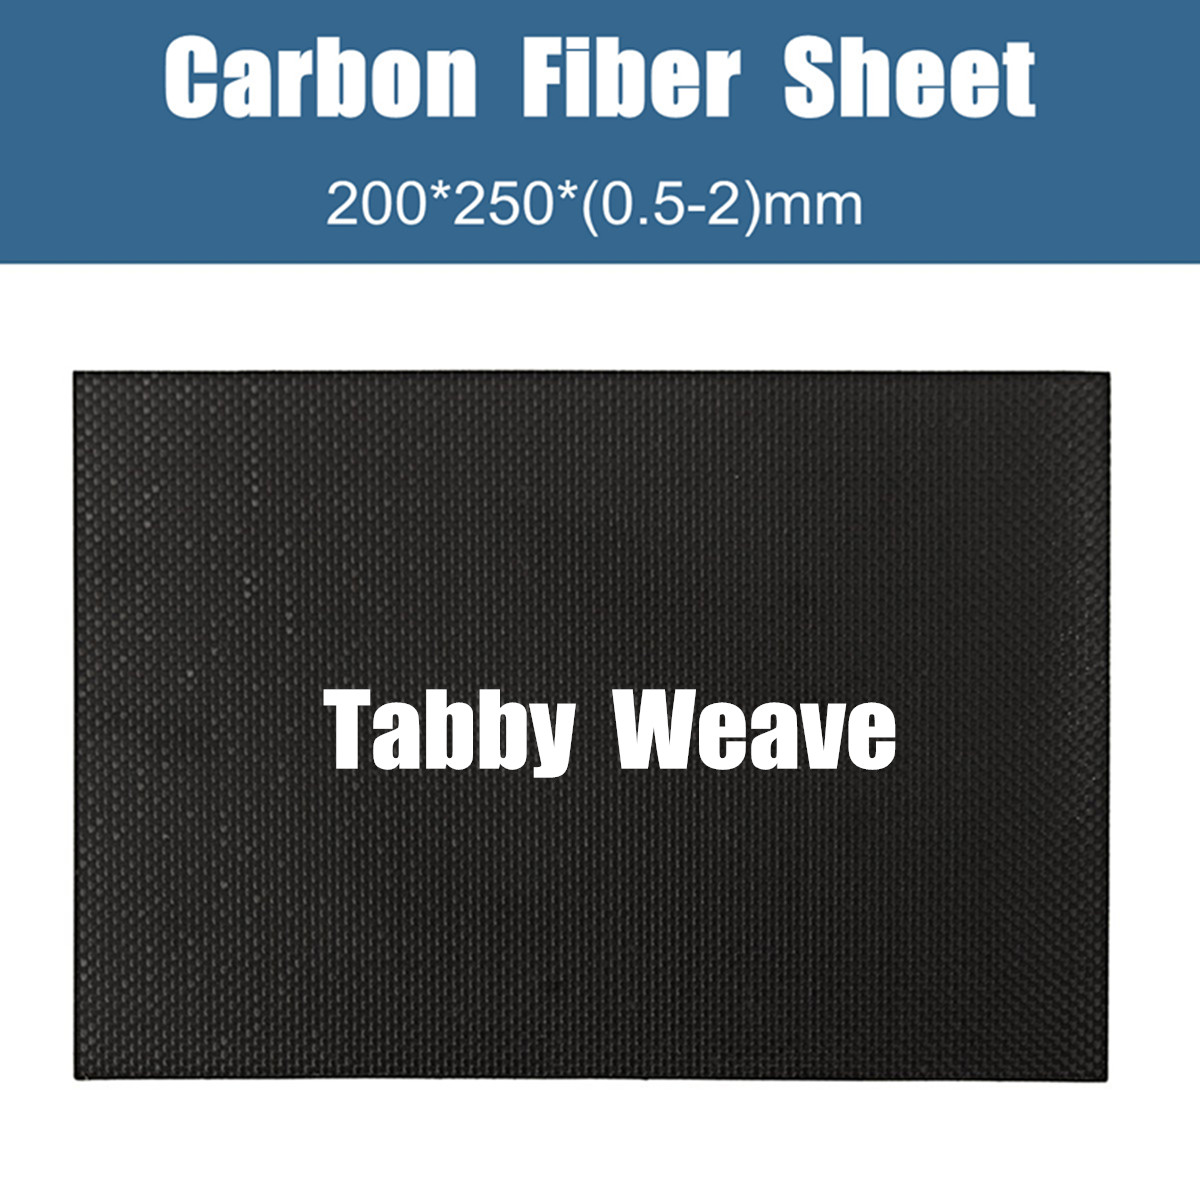 200x250x05-2mm-Plain-Weave-3K-Carbon-Fiber-Plate-Panel-Sheet-Tabby-Matt-Surface-Board-1332224-1